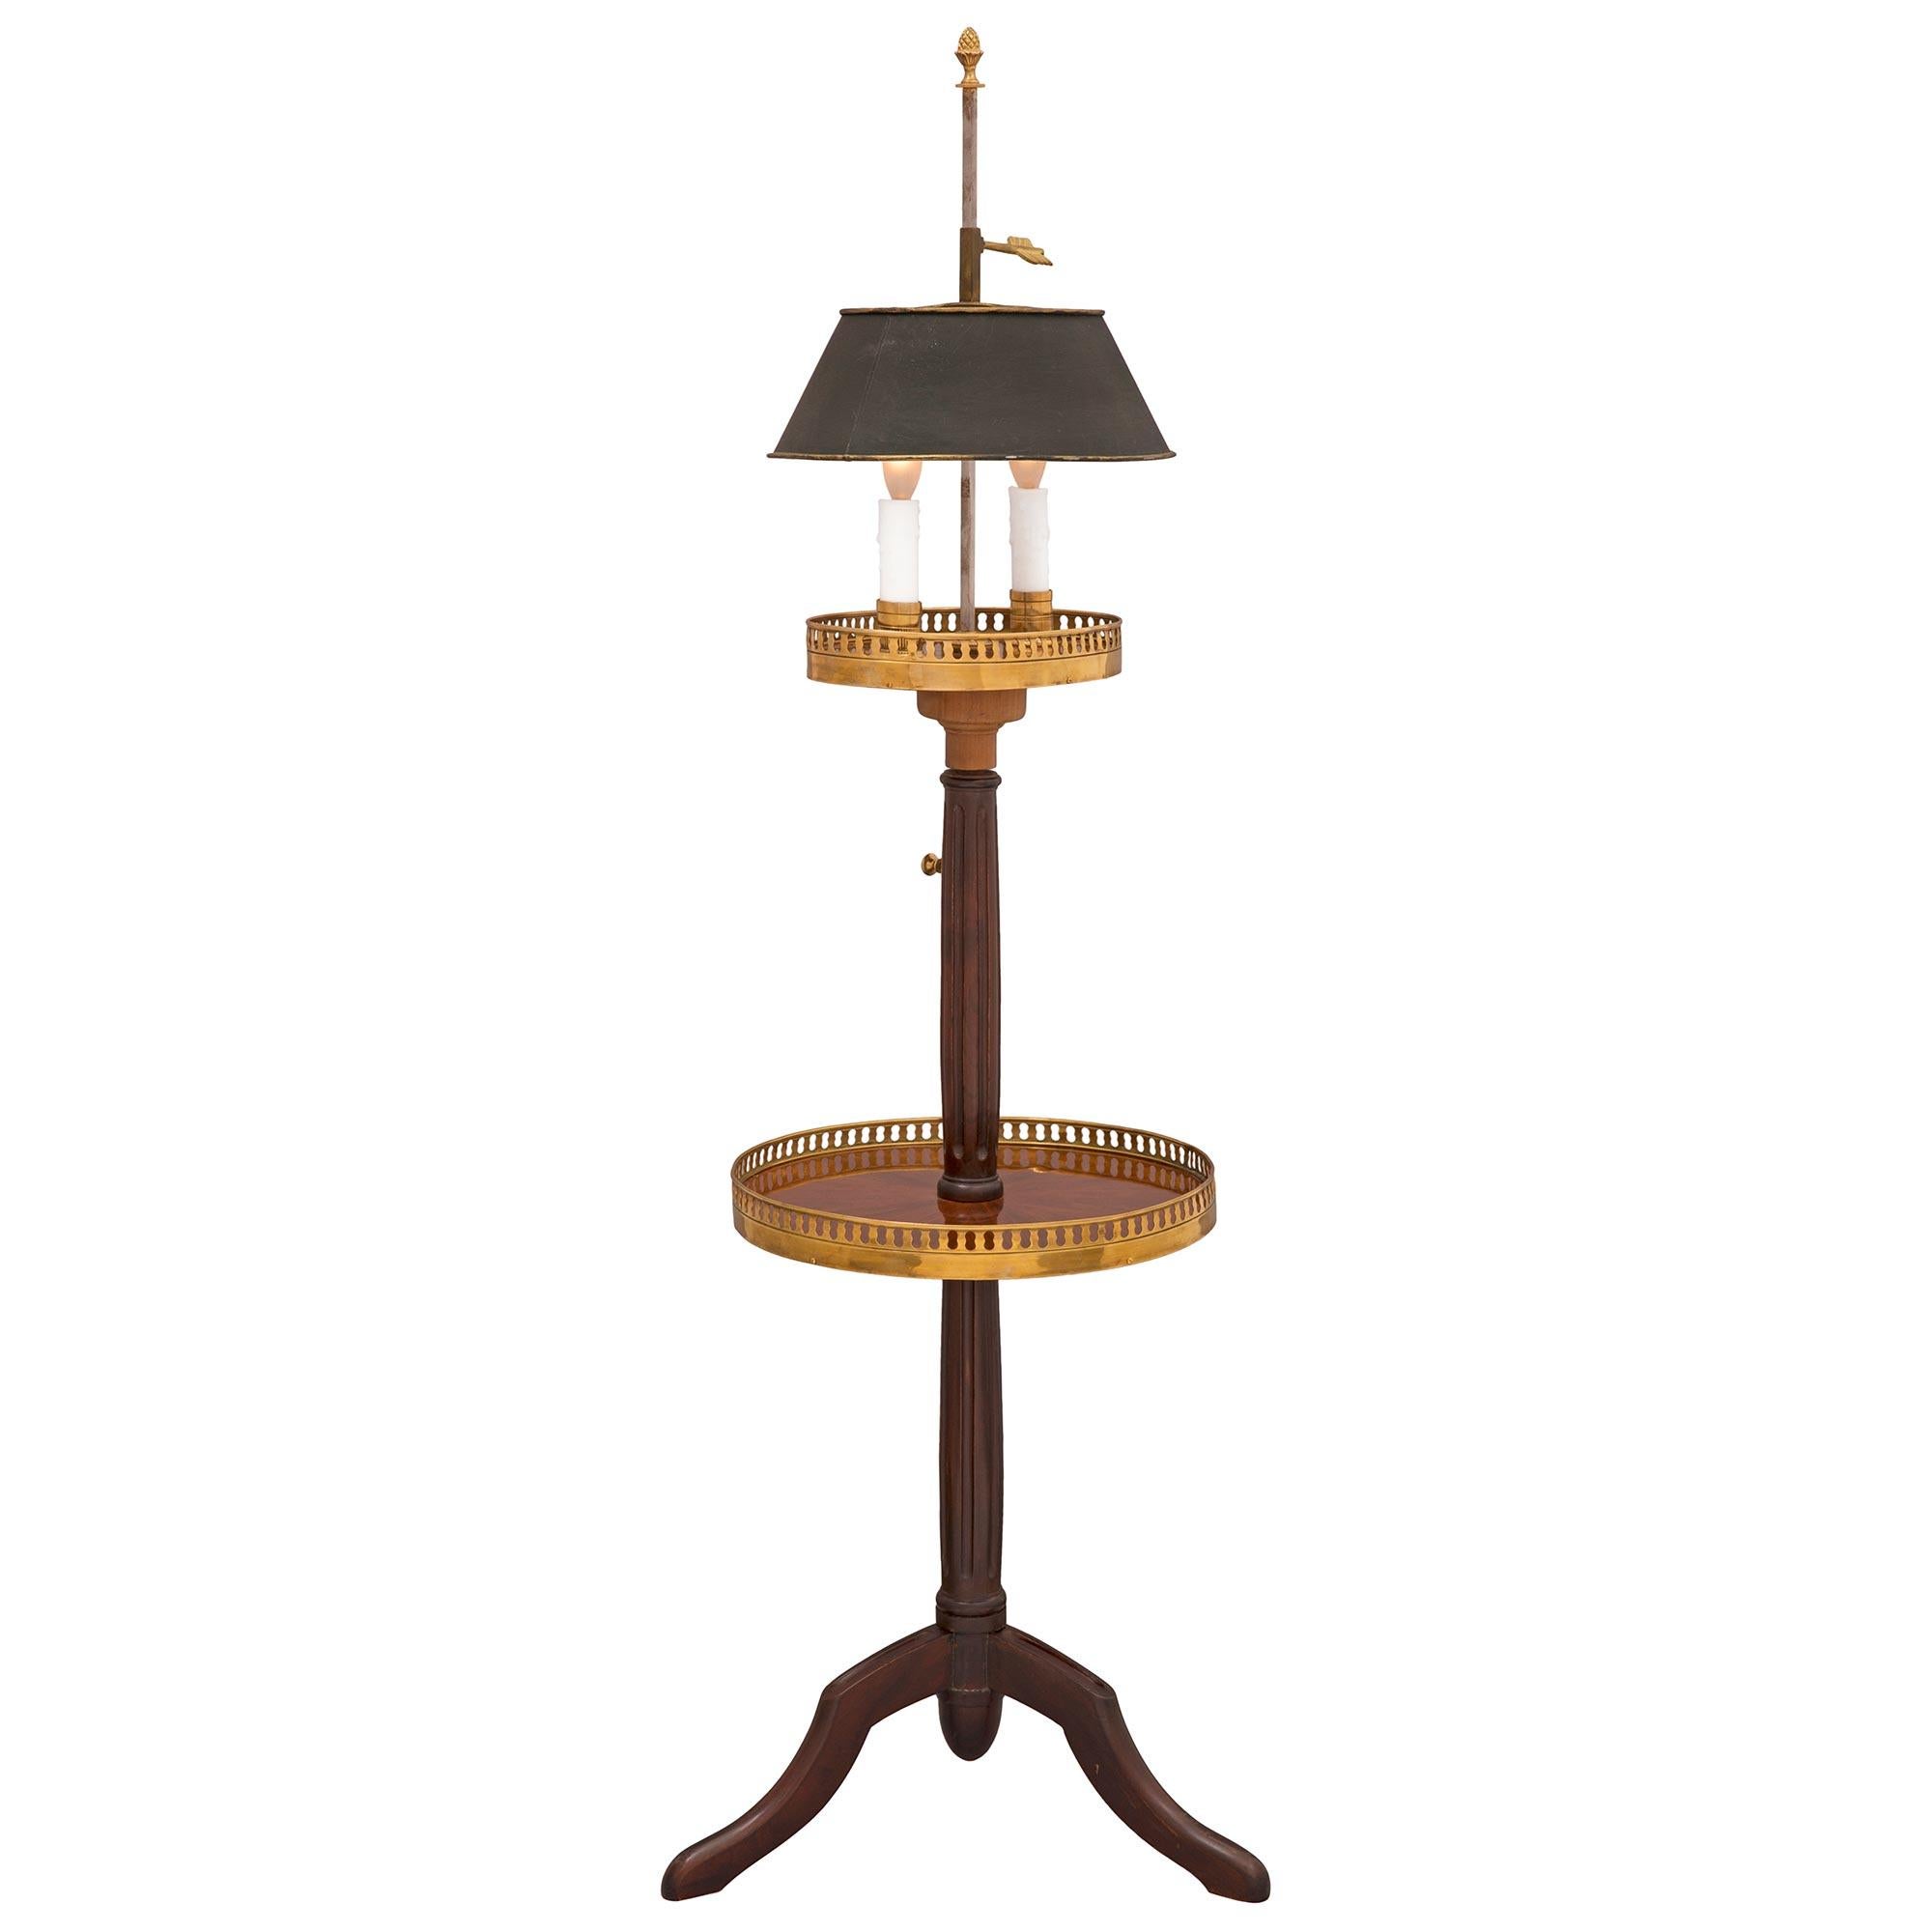 Charmante et très unique table/lampes d'appoint en acajou et bronze doré de style Louis XVI du XIXe siècle. La table à deux niveaux est surélevée par trois pieds élégamment courbés sous un support circulaire cannelé en forme de balustre. Au centre